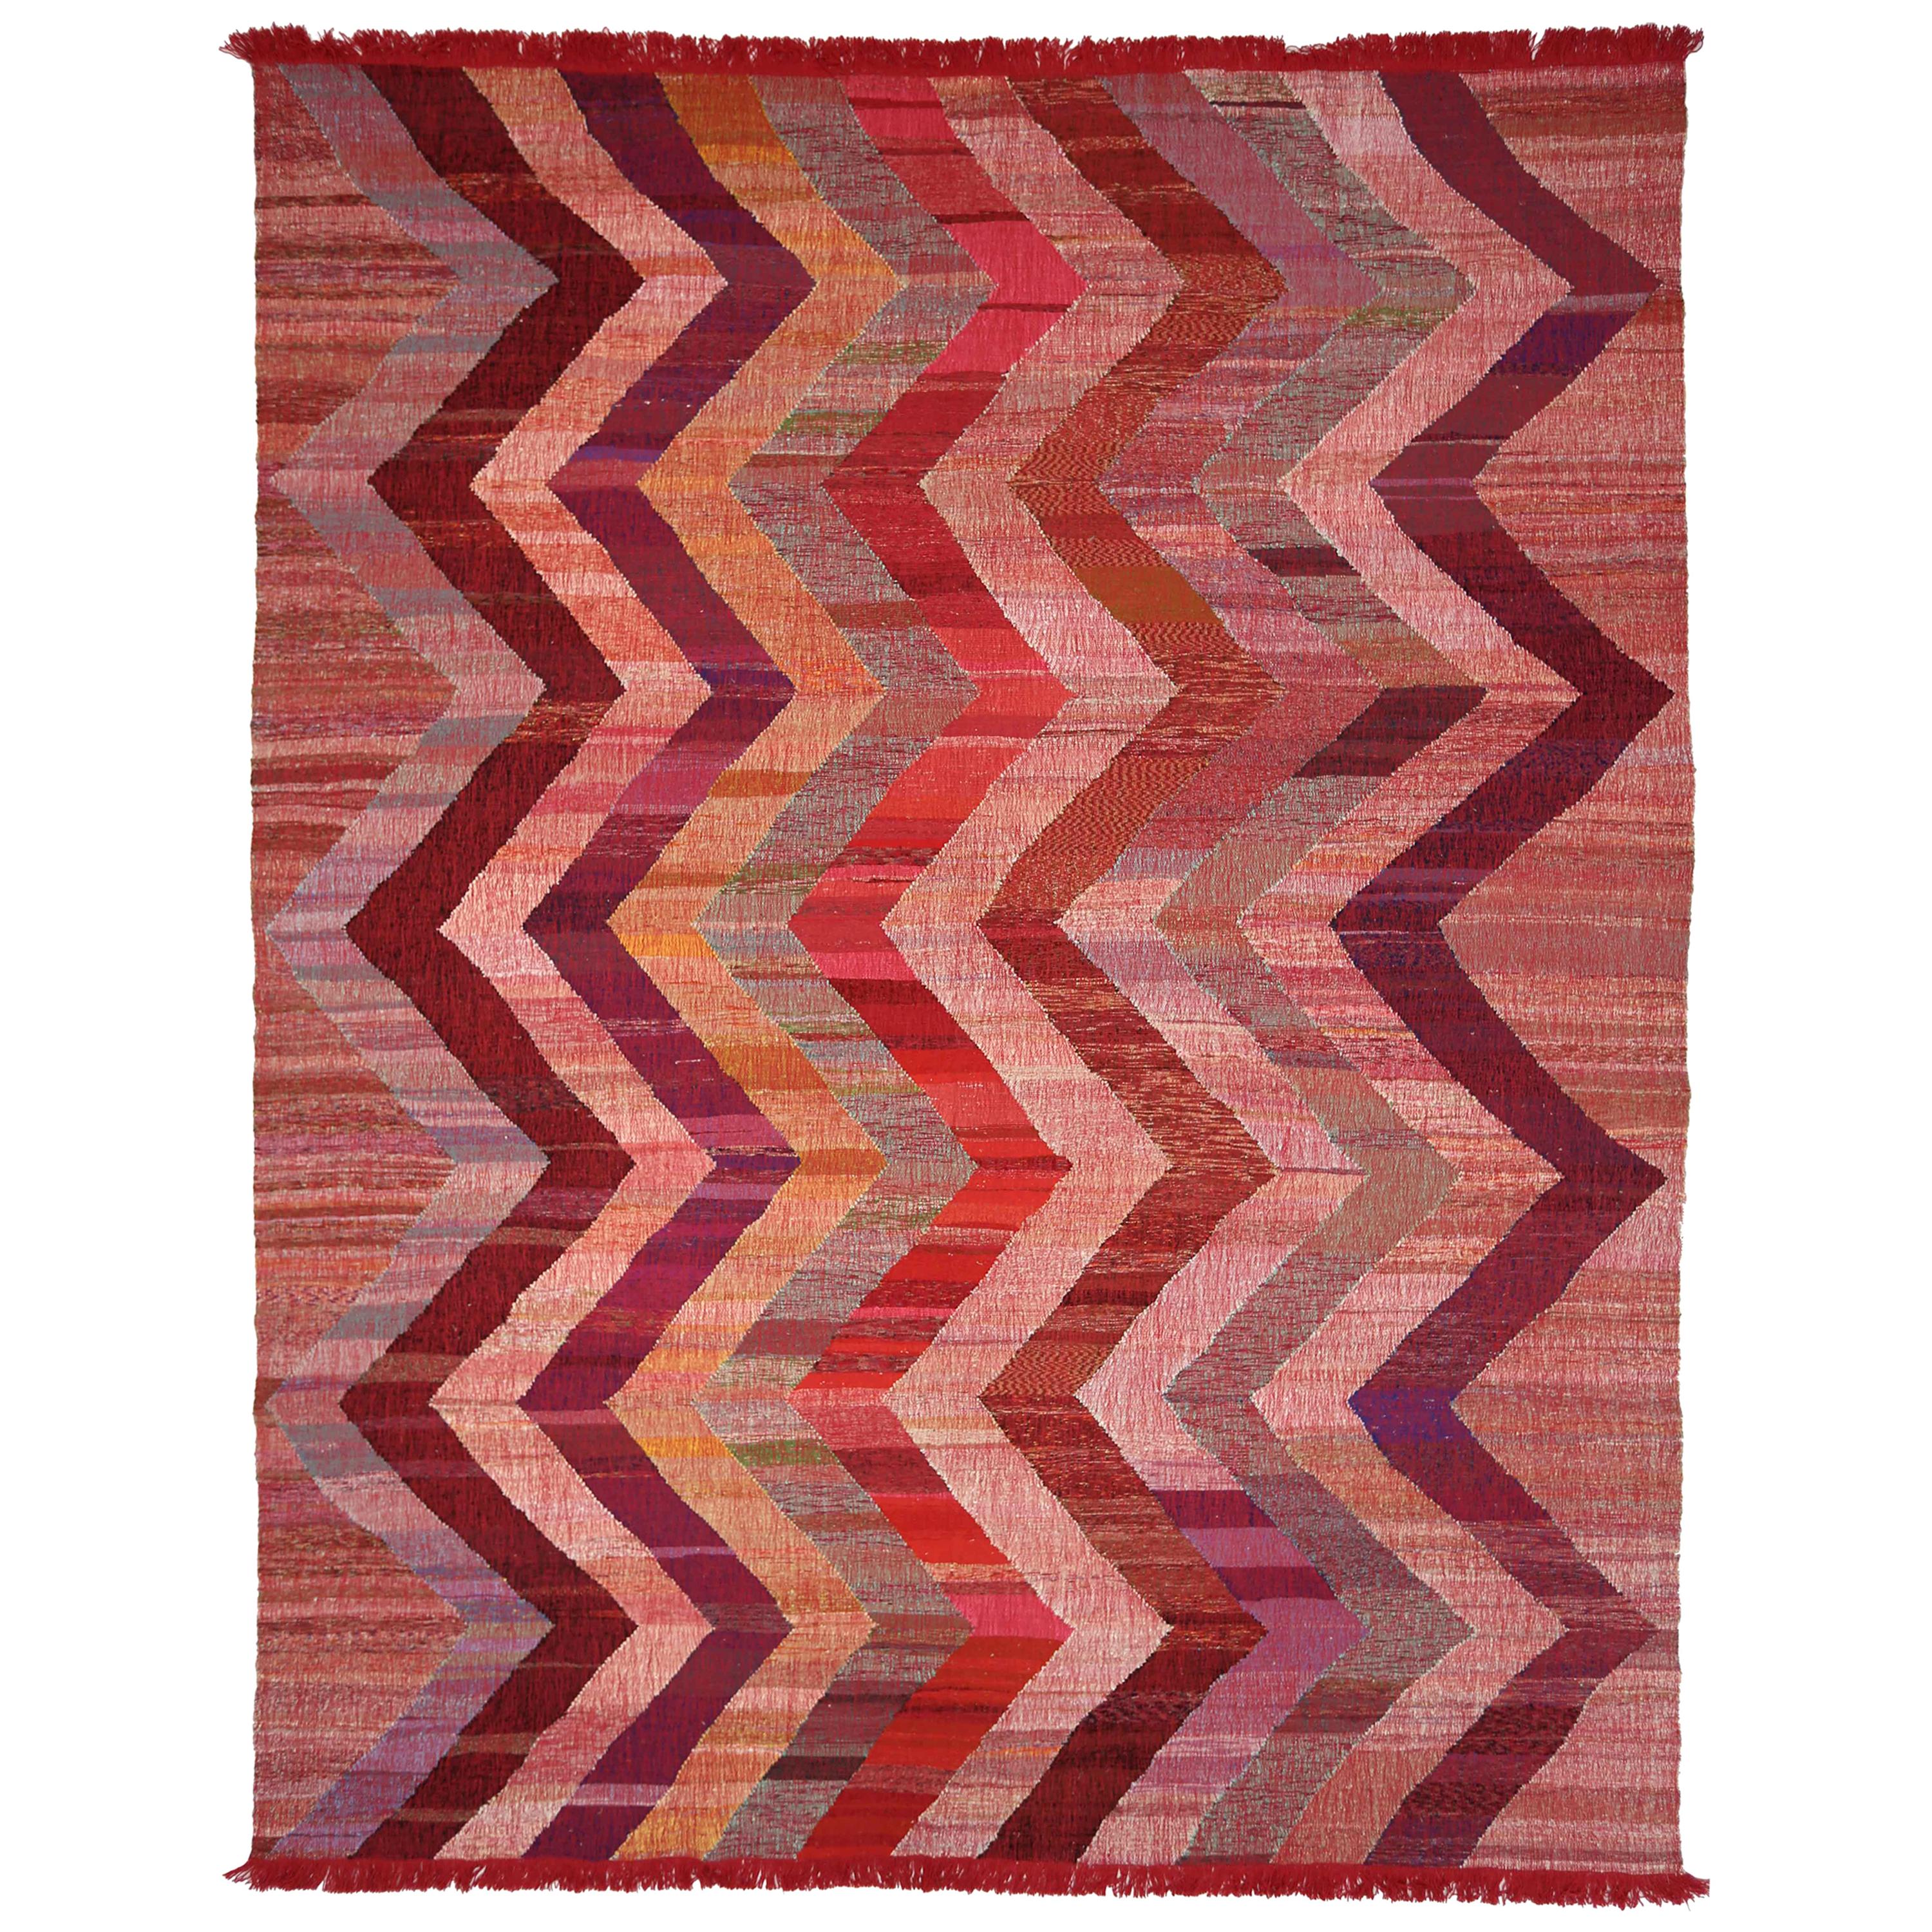 Tapis Kilim turc moderne fabriqué en laine ancienne avec des détails à chevrons colorés